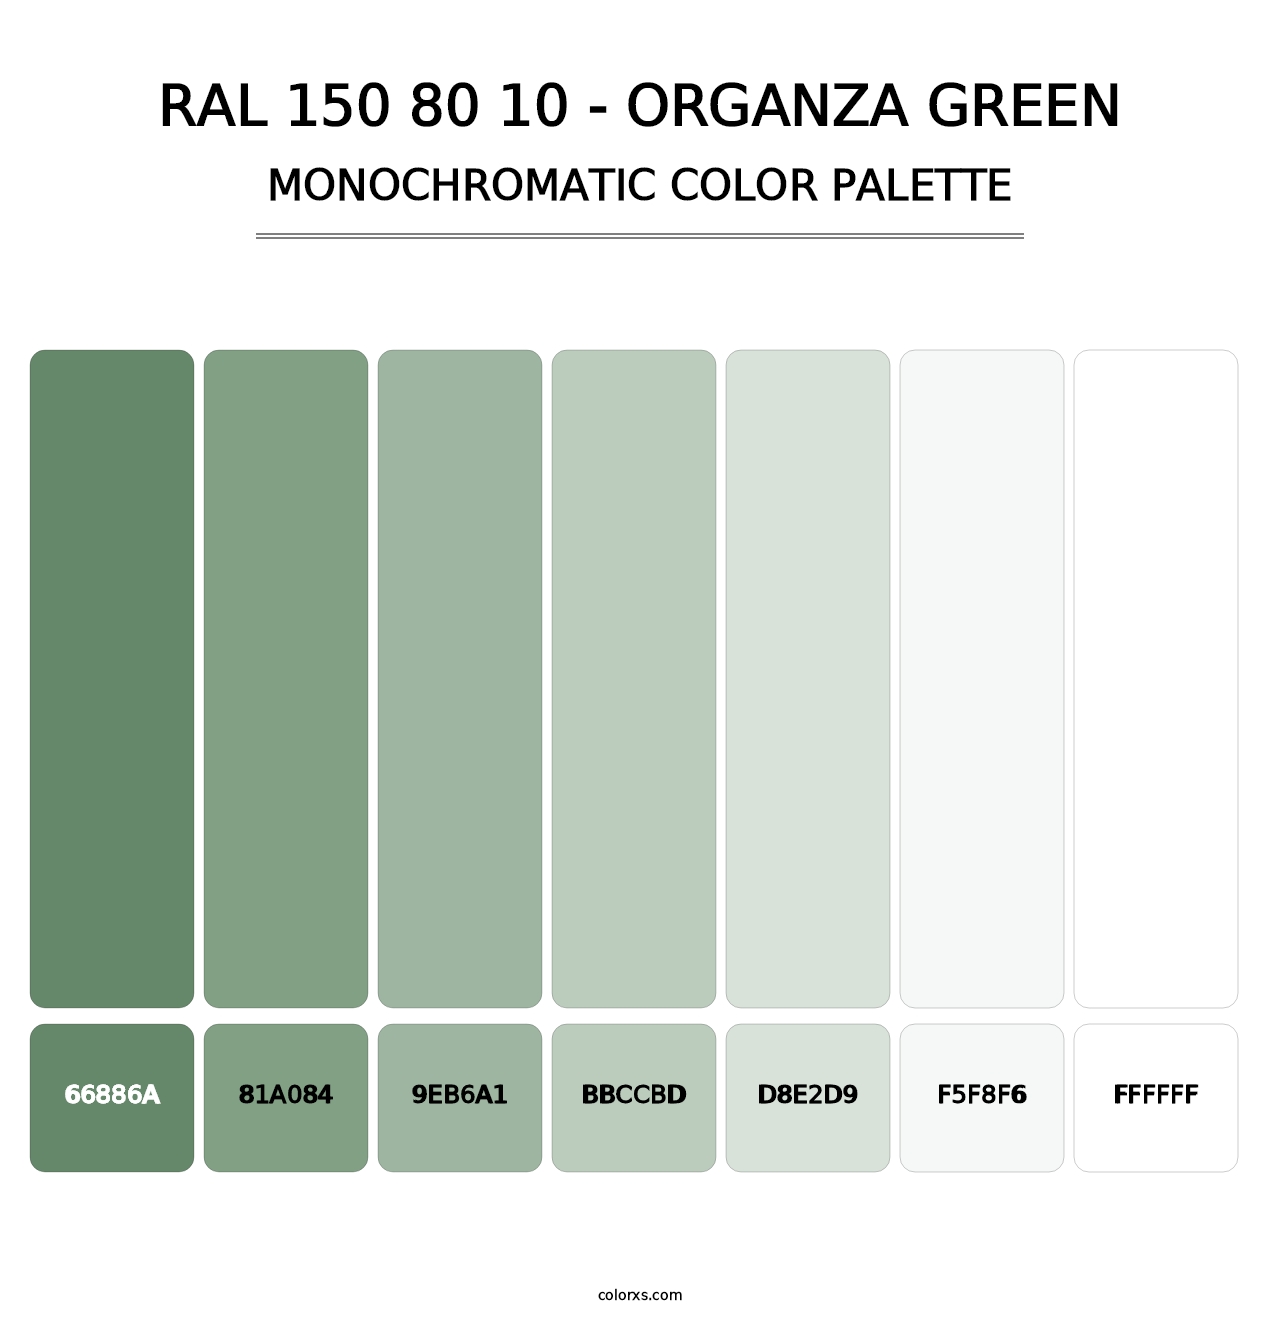 RAL 150 80 10 - Organza Green - Monochromatic Color Palette